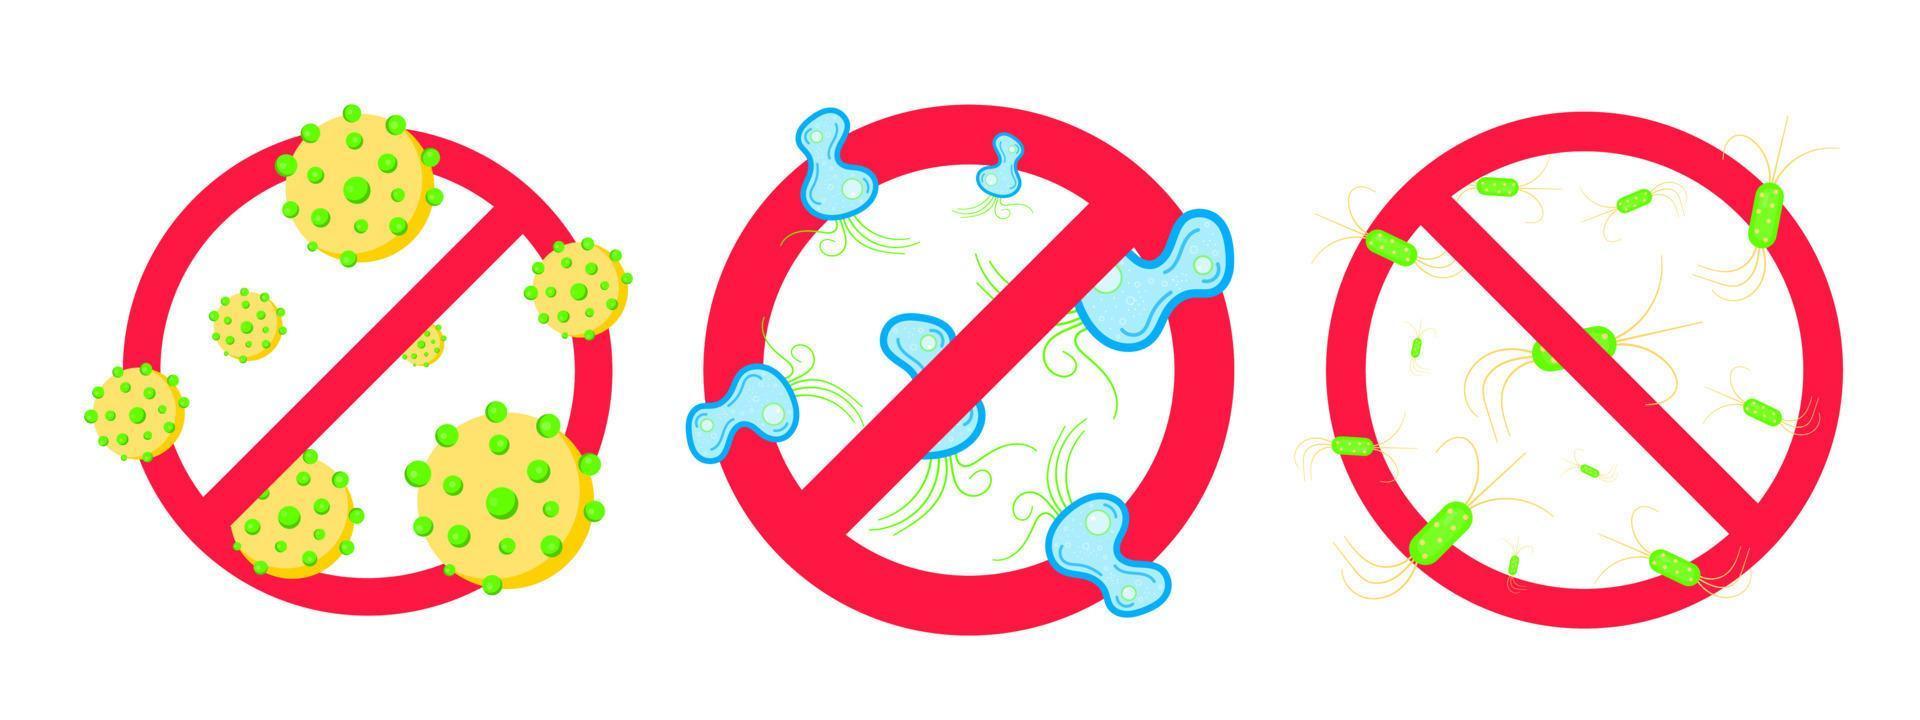 3 Stoppen Sie das Verbotszeichen für Viren und schlechte Bakterien oder Keime. vektor